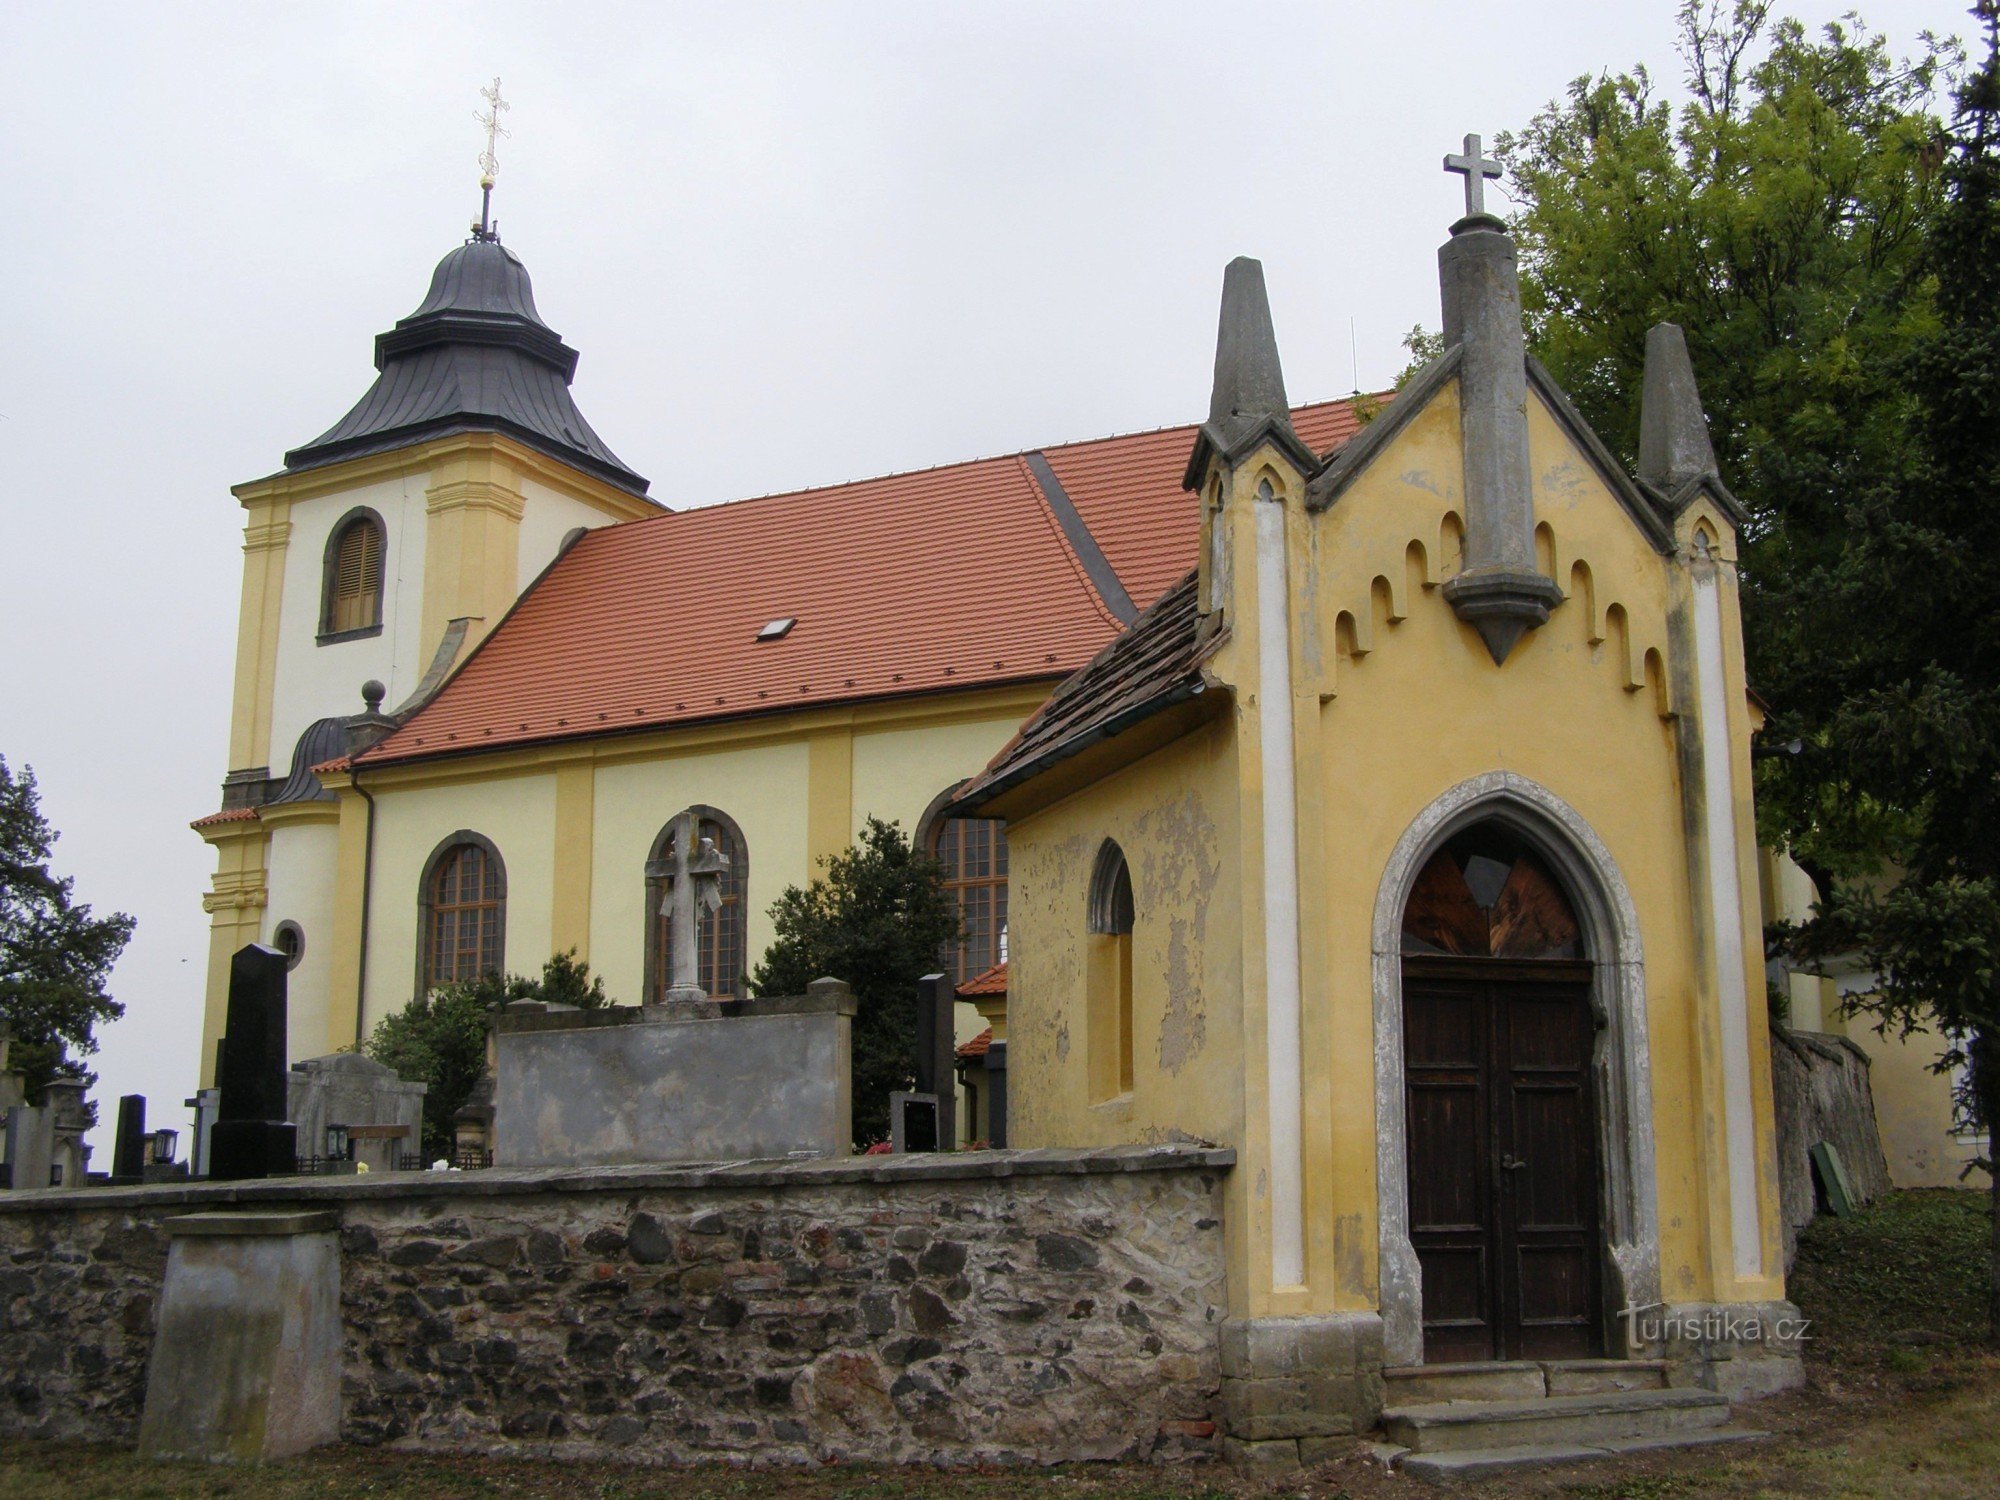 Mikulovice - Church of St. Wenceslas